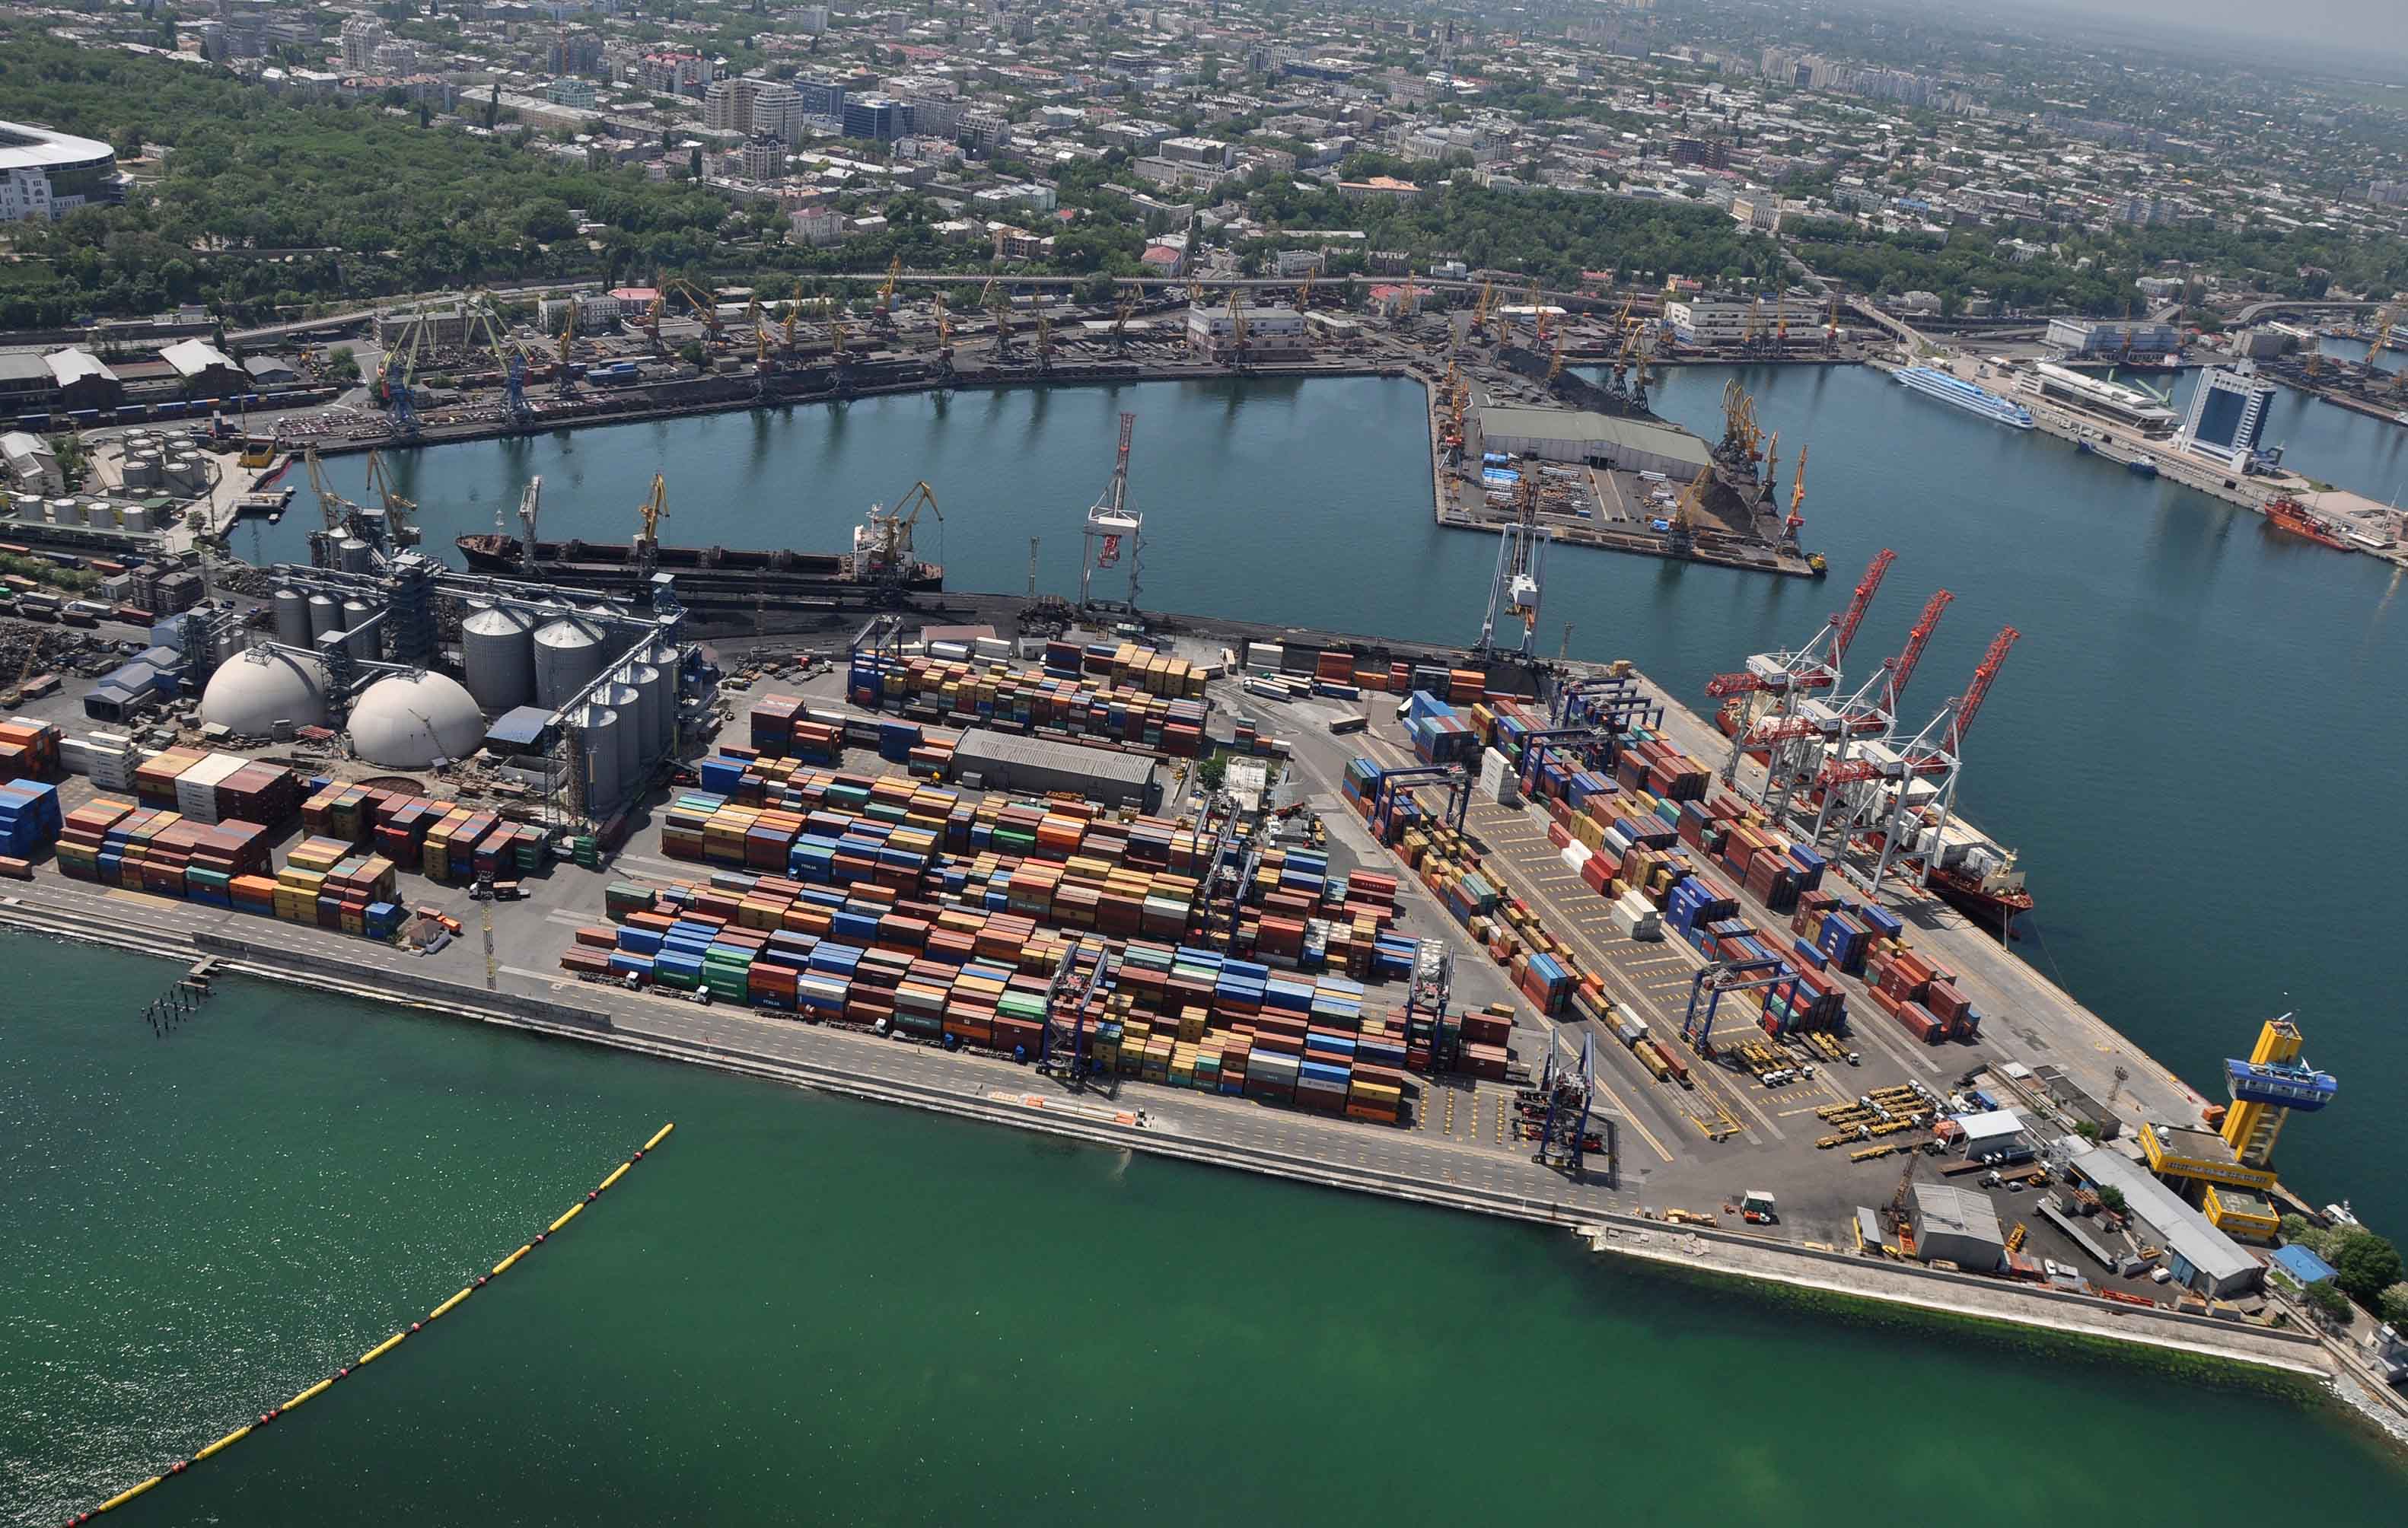 Các nhân viên thực thi pháp luật bắt nhóm tội phạm, chuyên ăn cắp hàng xuất khẩu từ cảng Odessa.